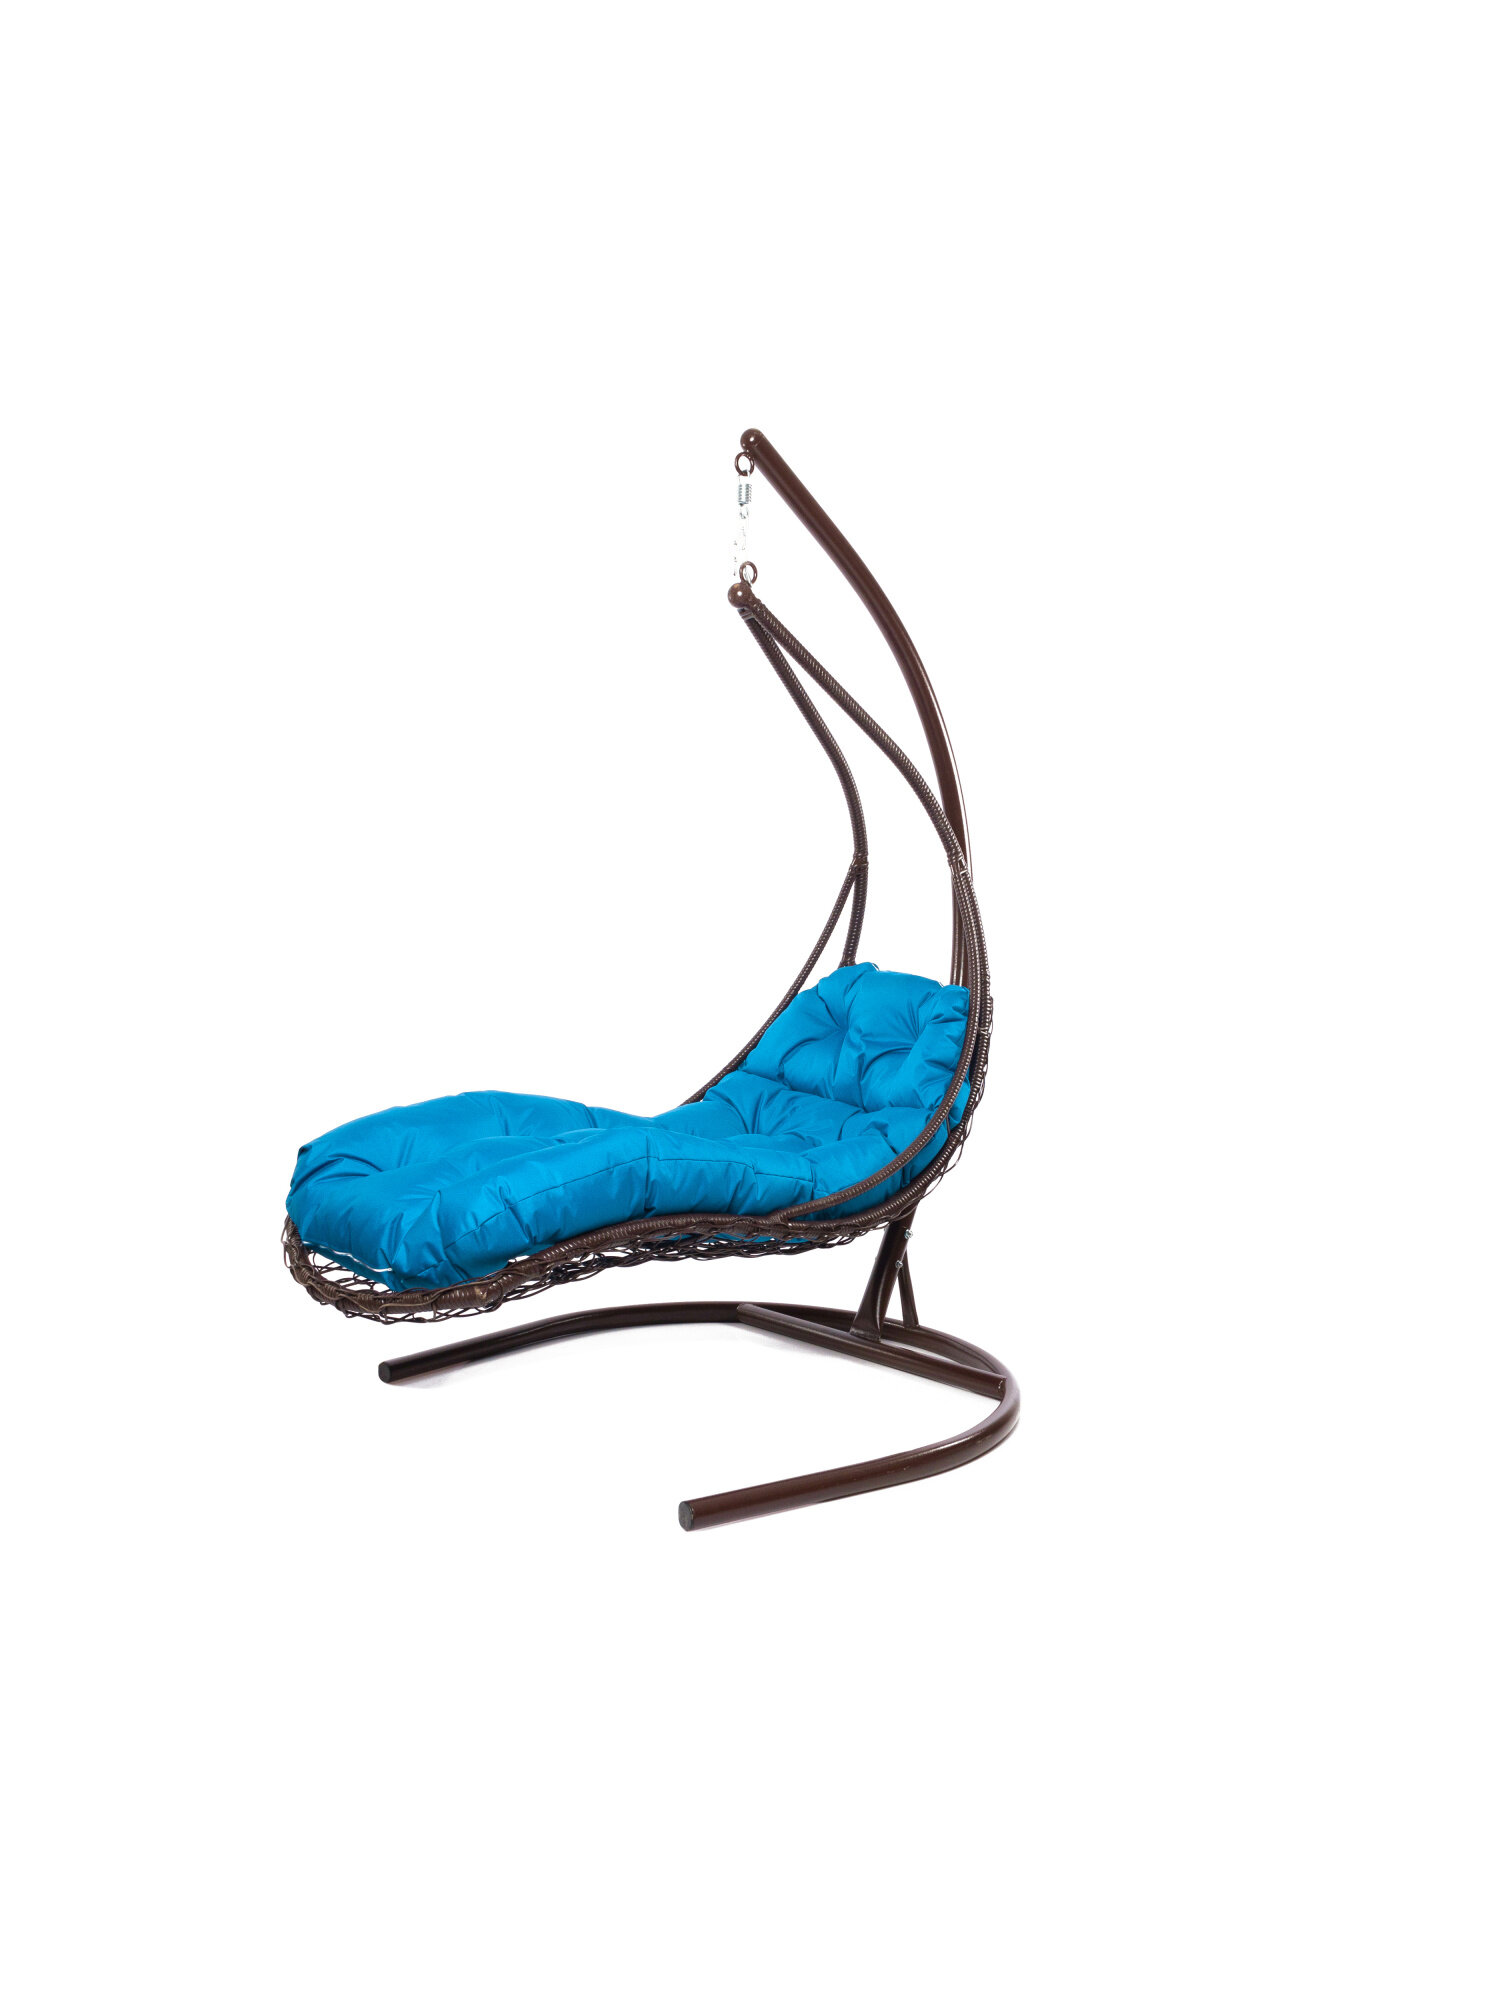 Подвесное кресло M-group лежачее с ротангом коричневое голубая подушка